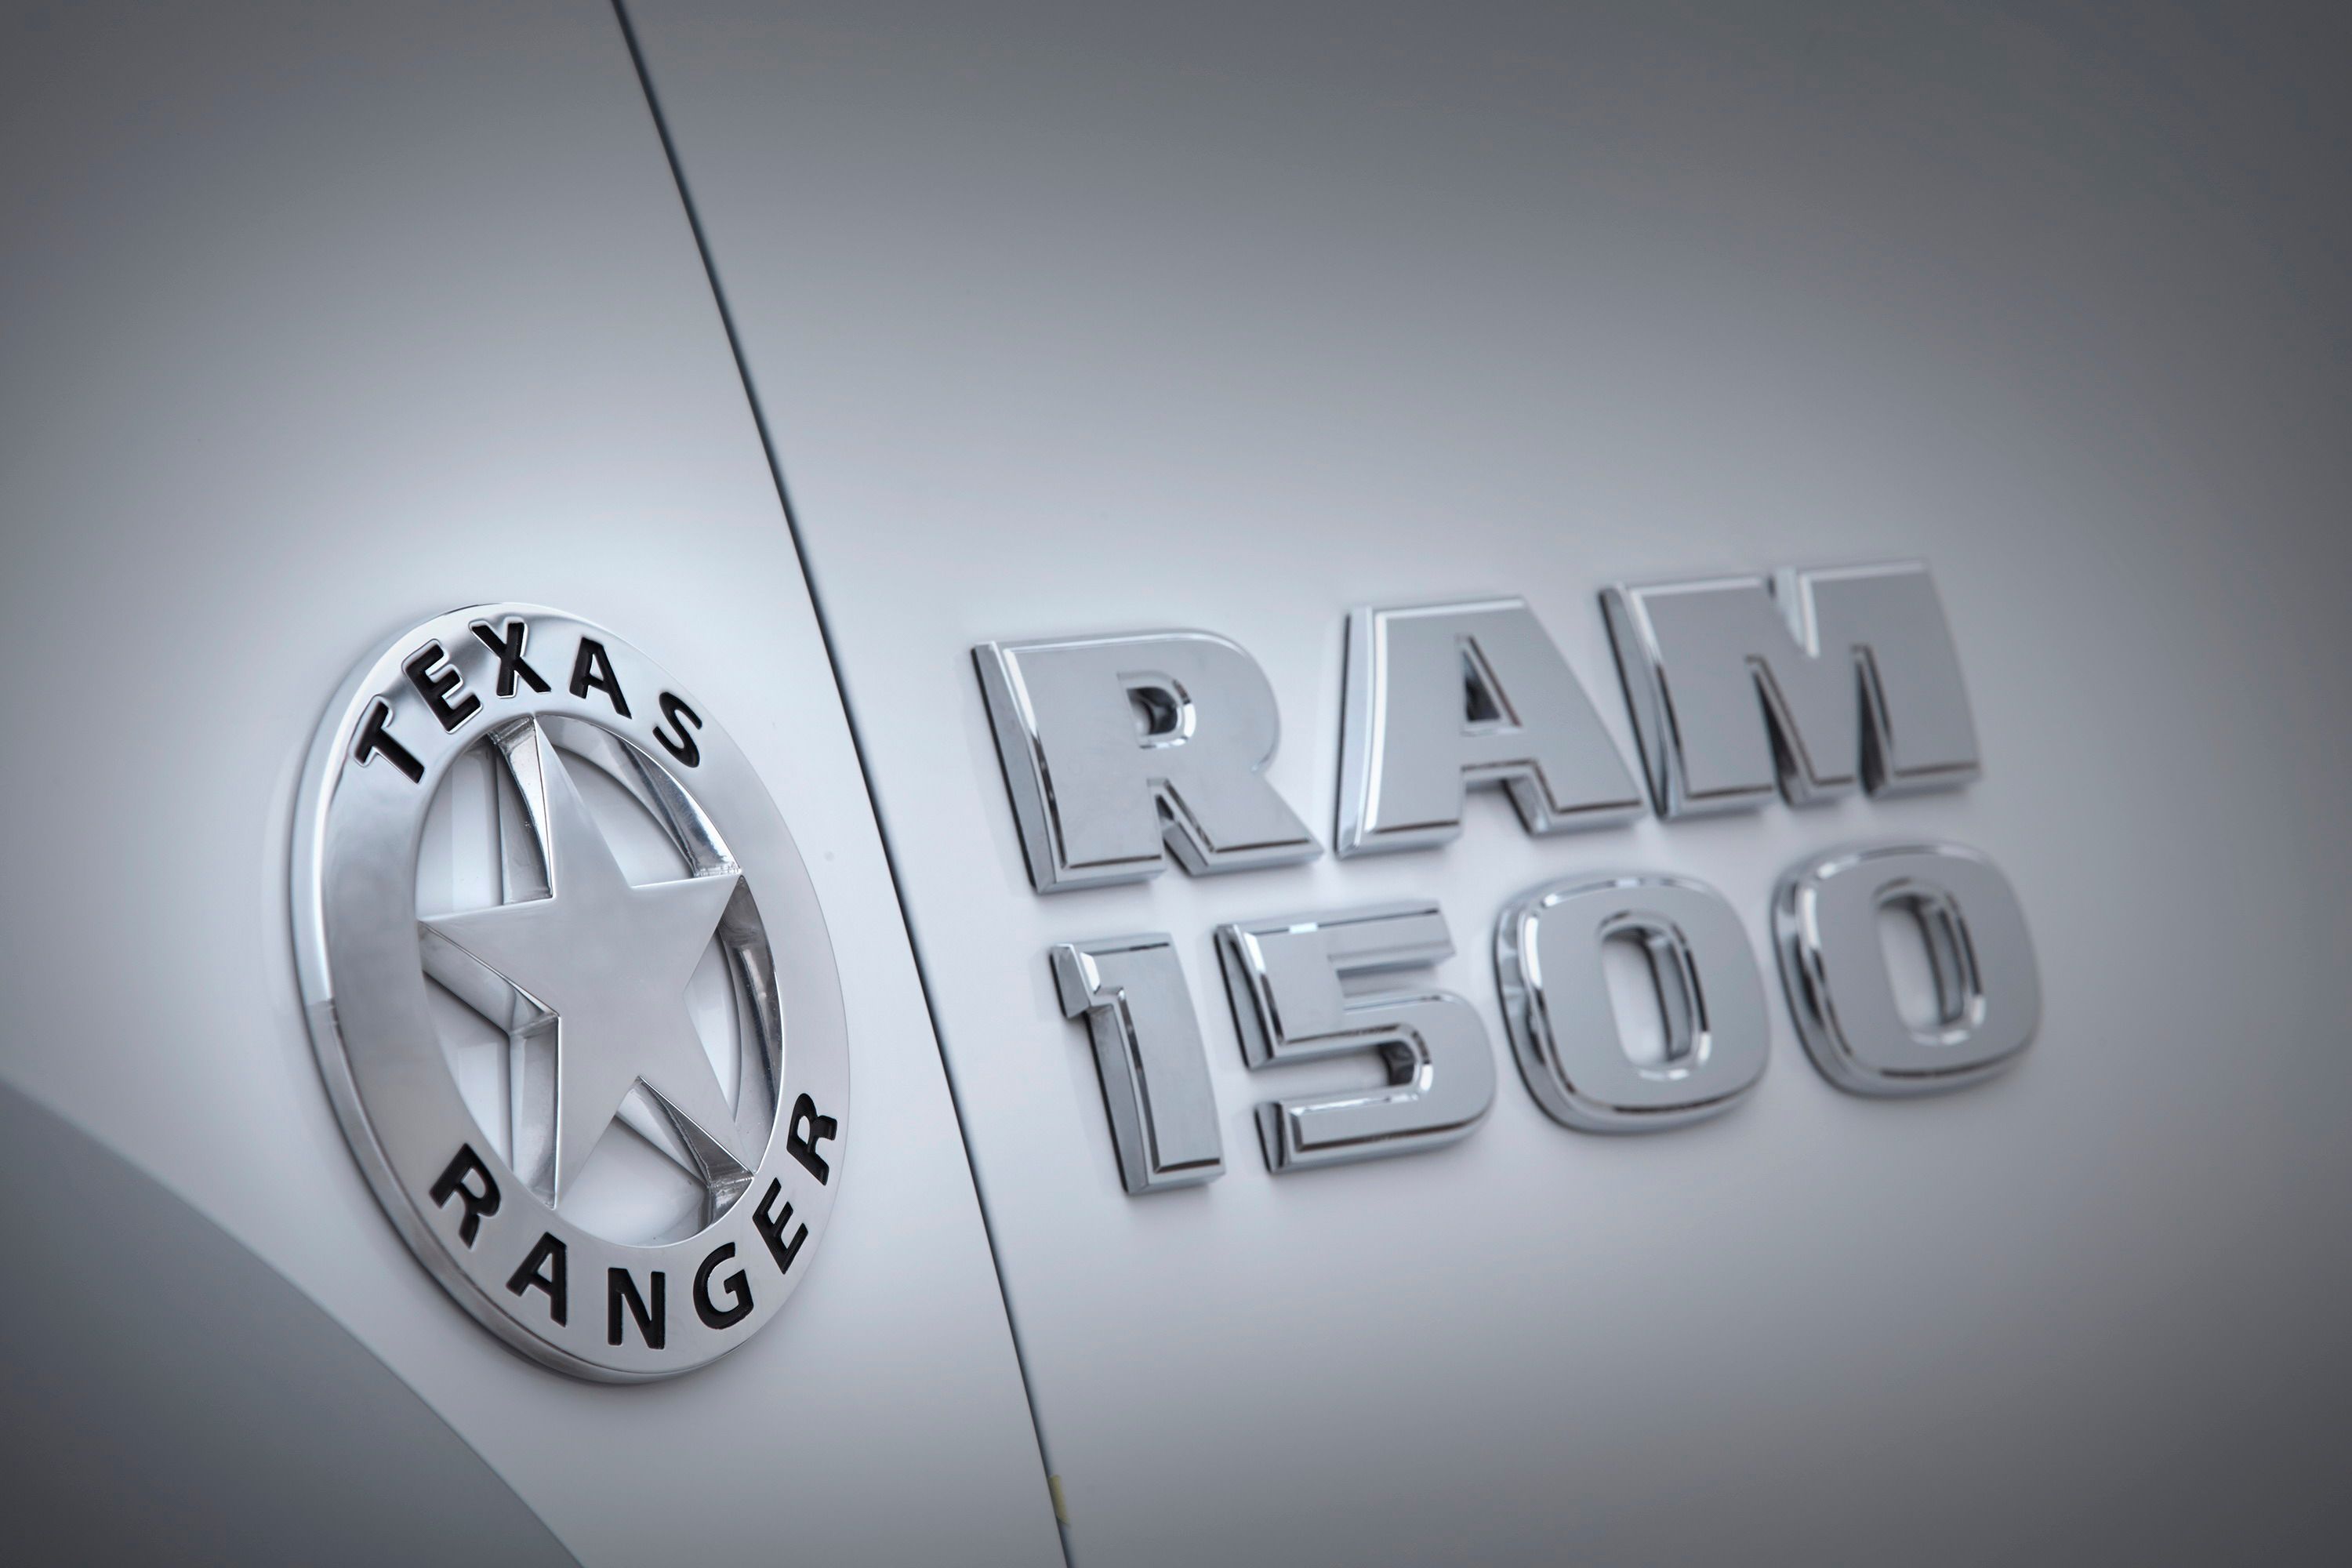 2015 Ram 1500 Texas Ranger Concept Truck